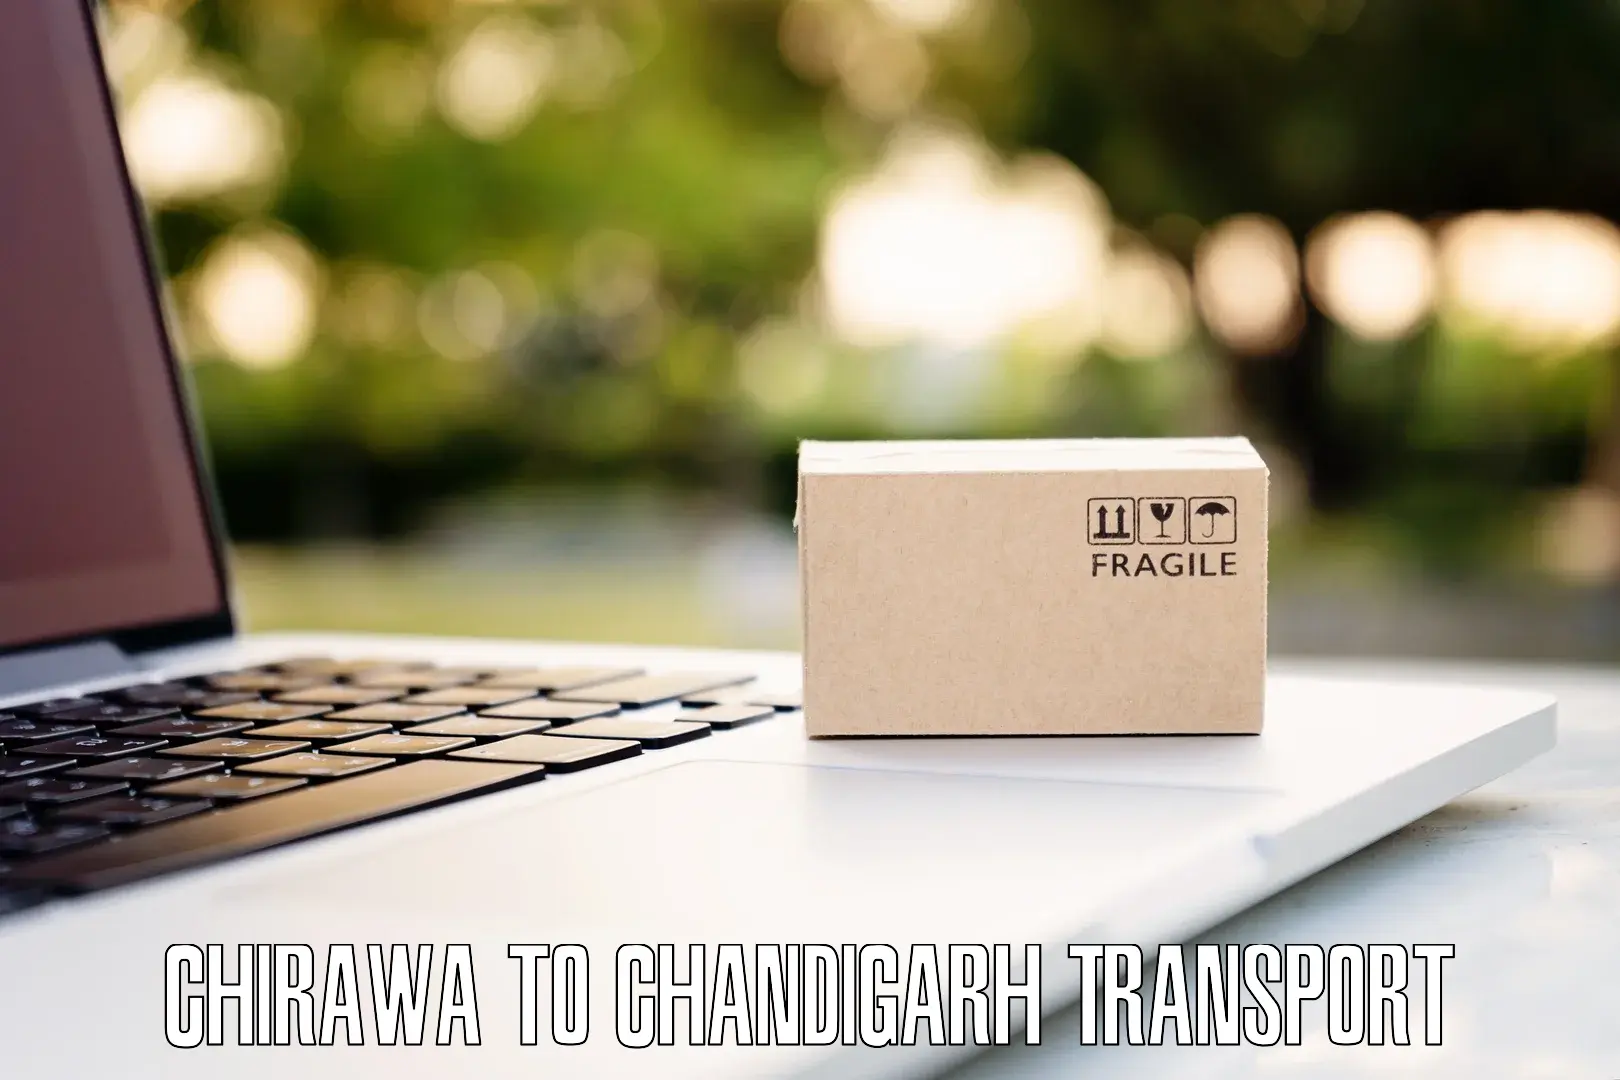 Transport shared services Chirawa to Chandigarh